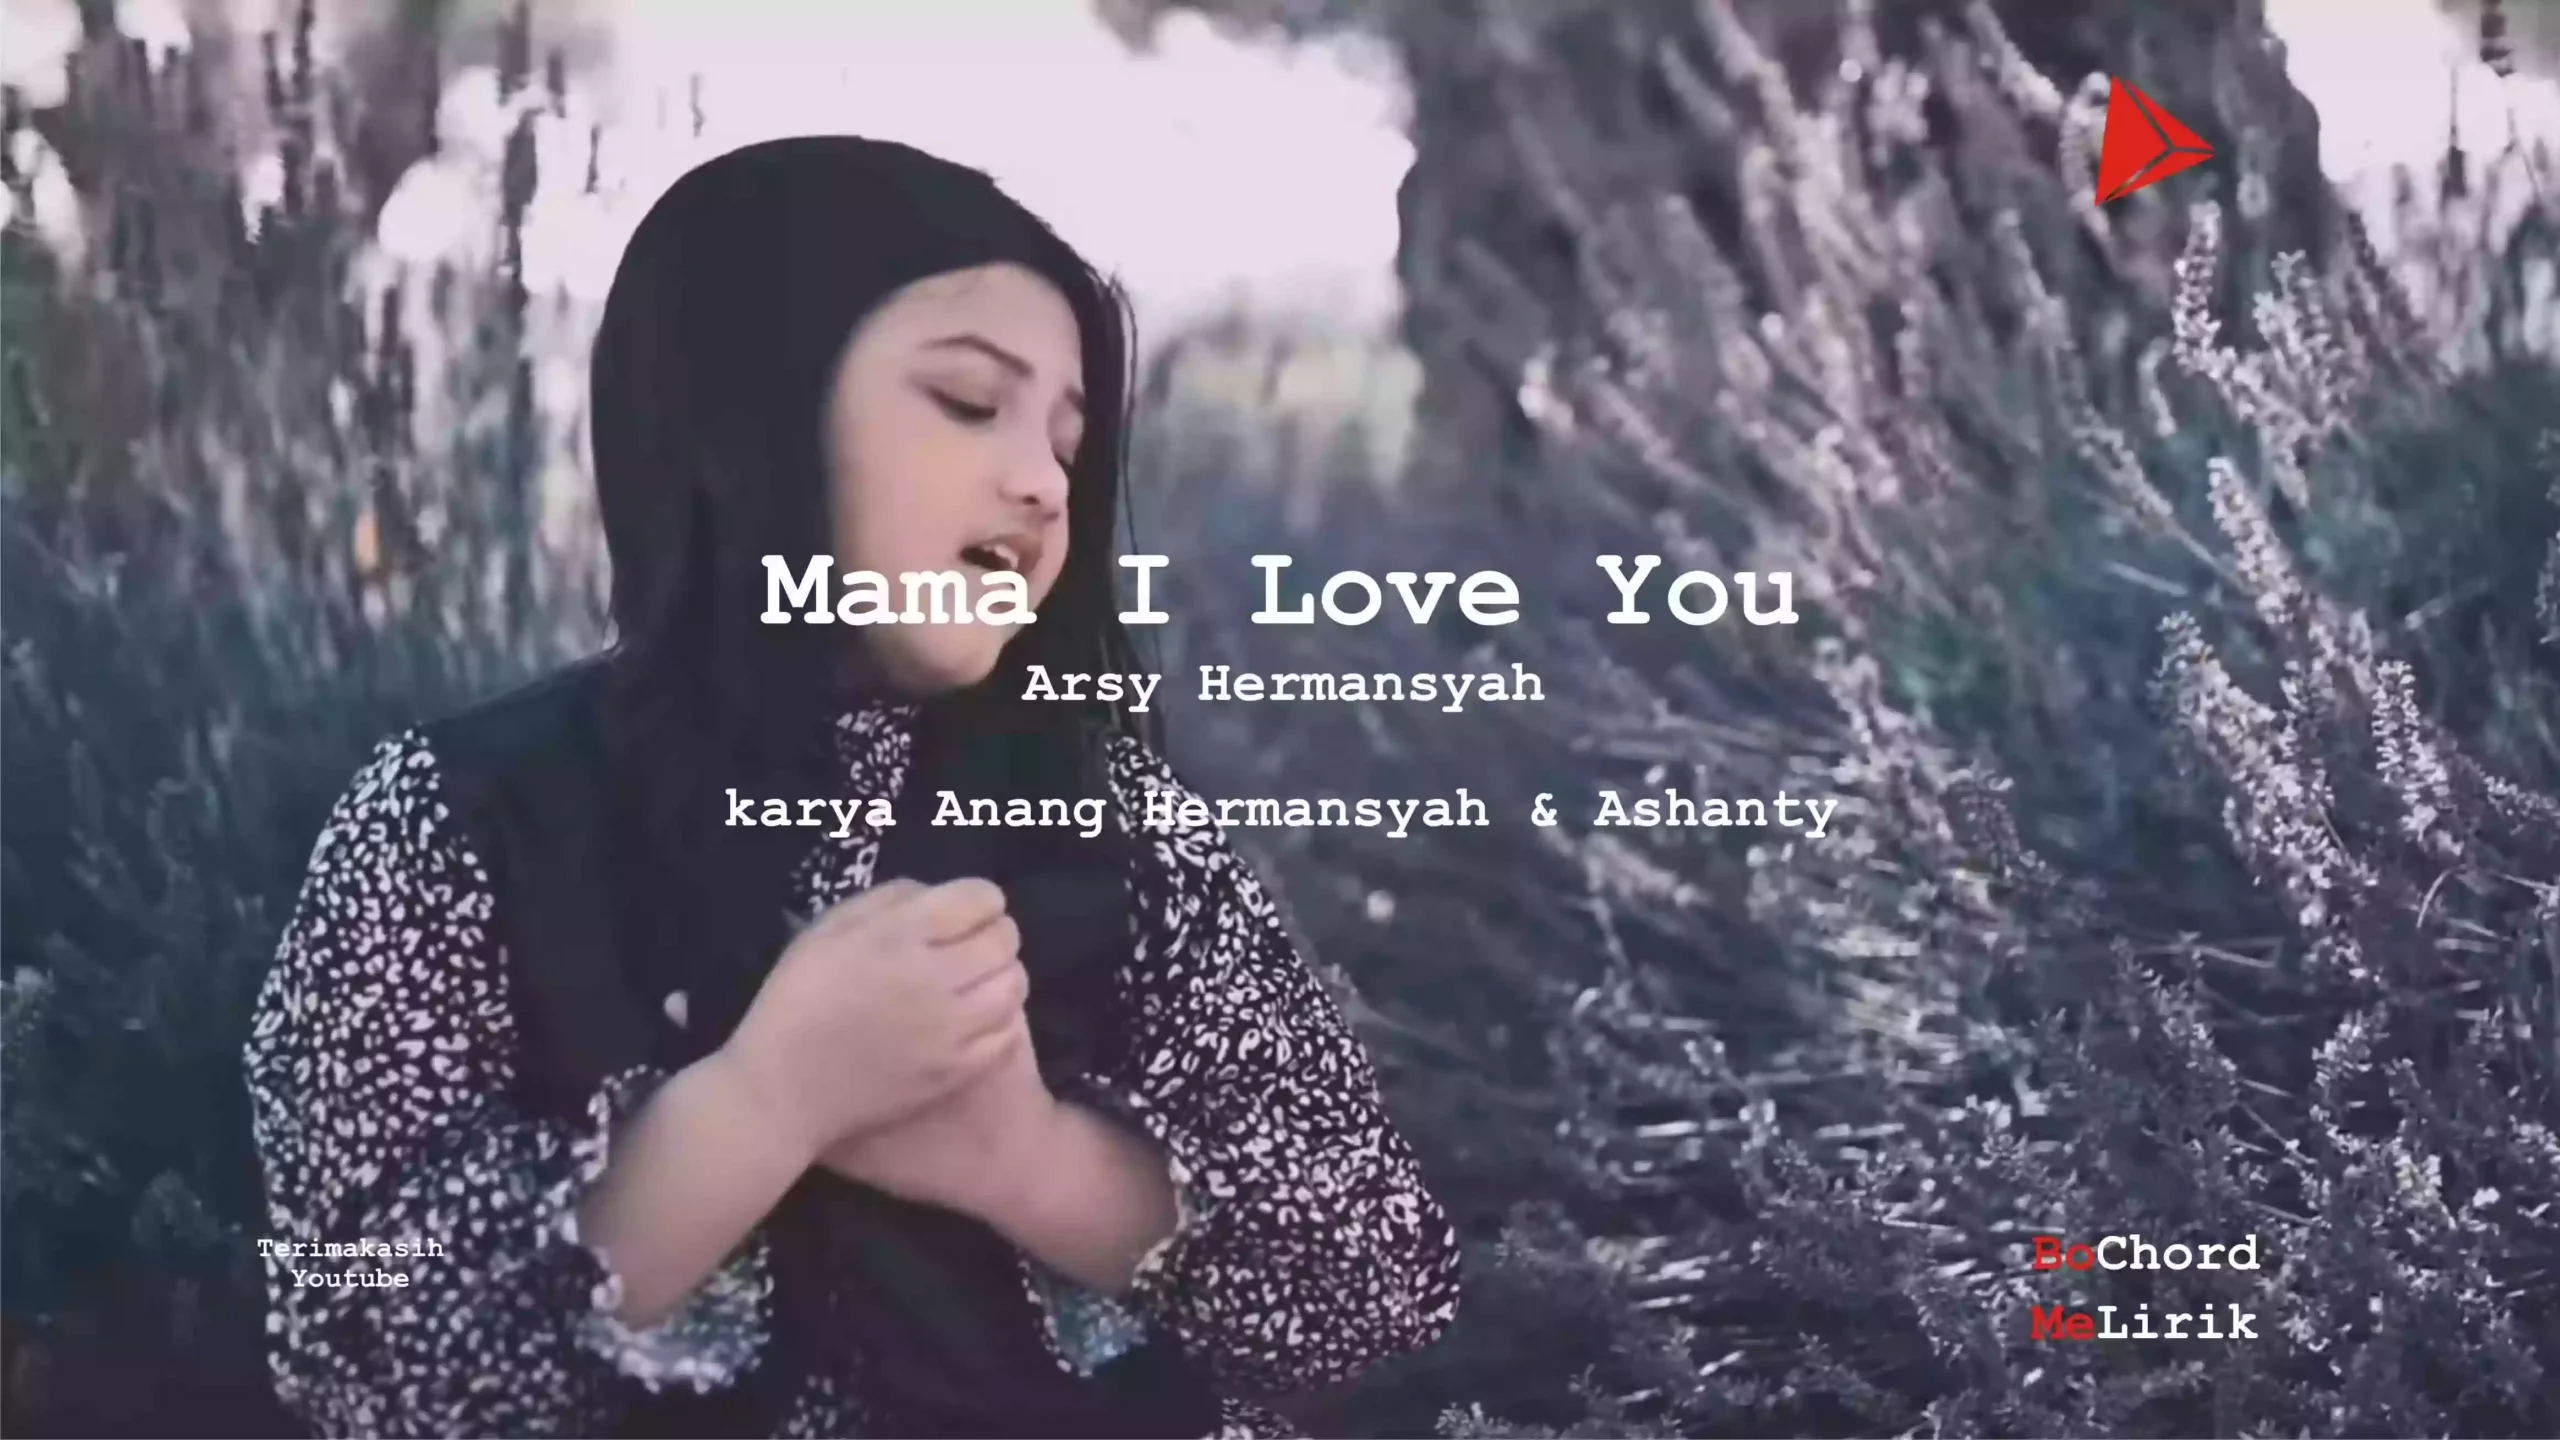 Mama I Love You Arsy Hermansyah karya Anang Hermansyah & Ashanty Me Lirik Lagu Bo Chord Ulasan Makna Lagu C D E F G A B tulisIN-karya kekitaan - karya selesaiin masalah